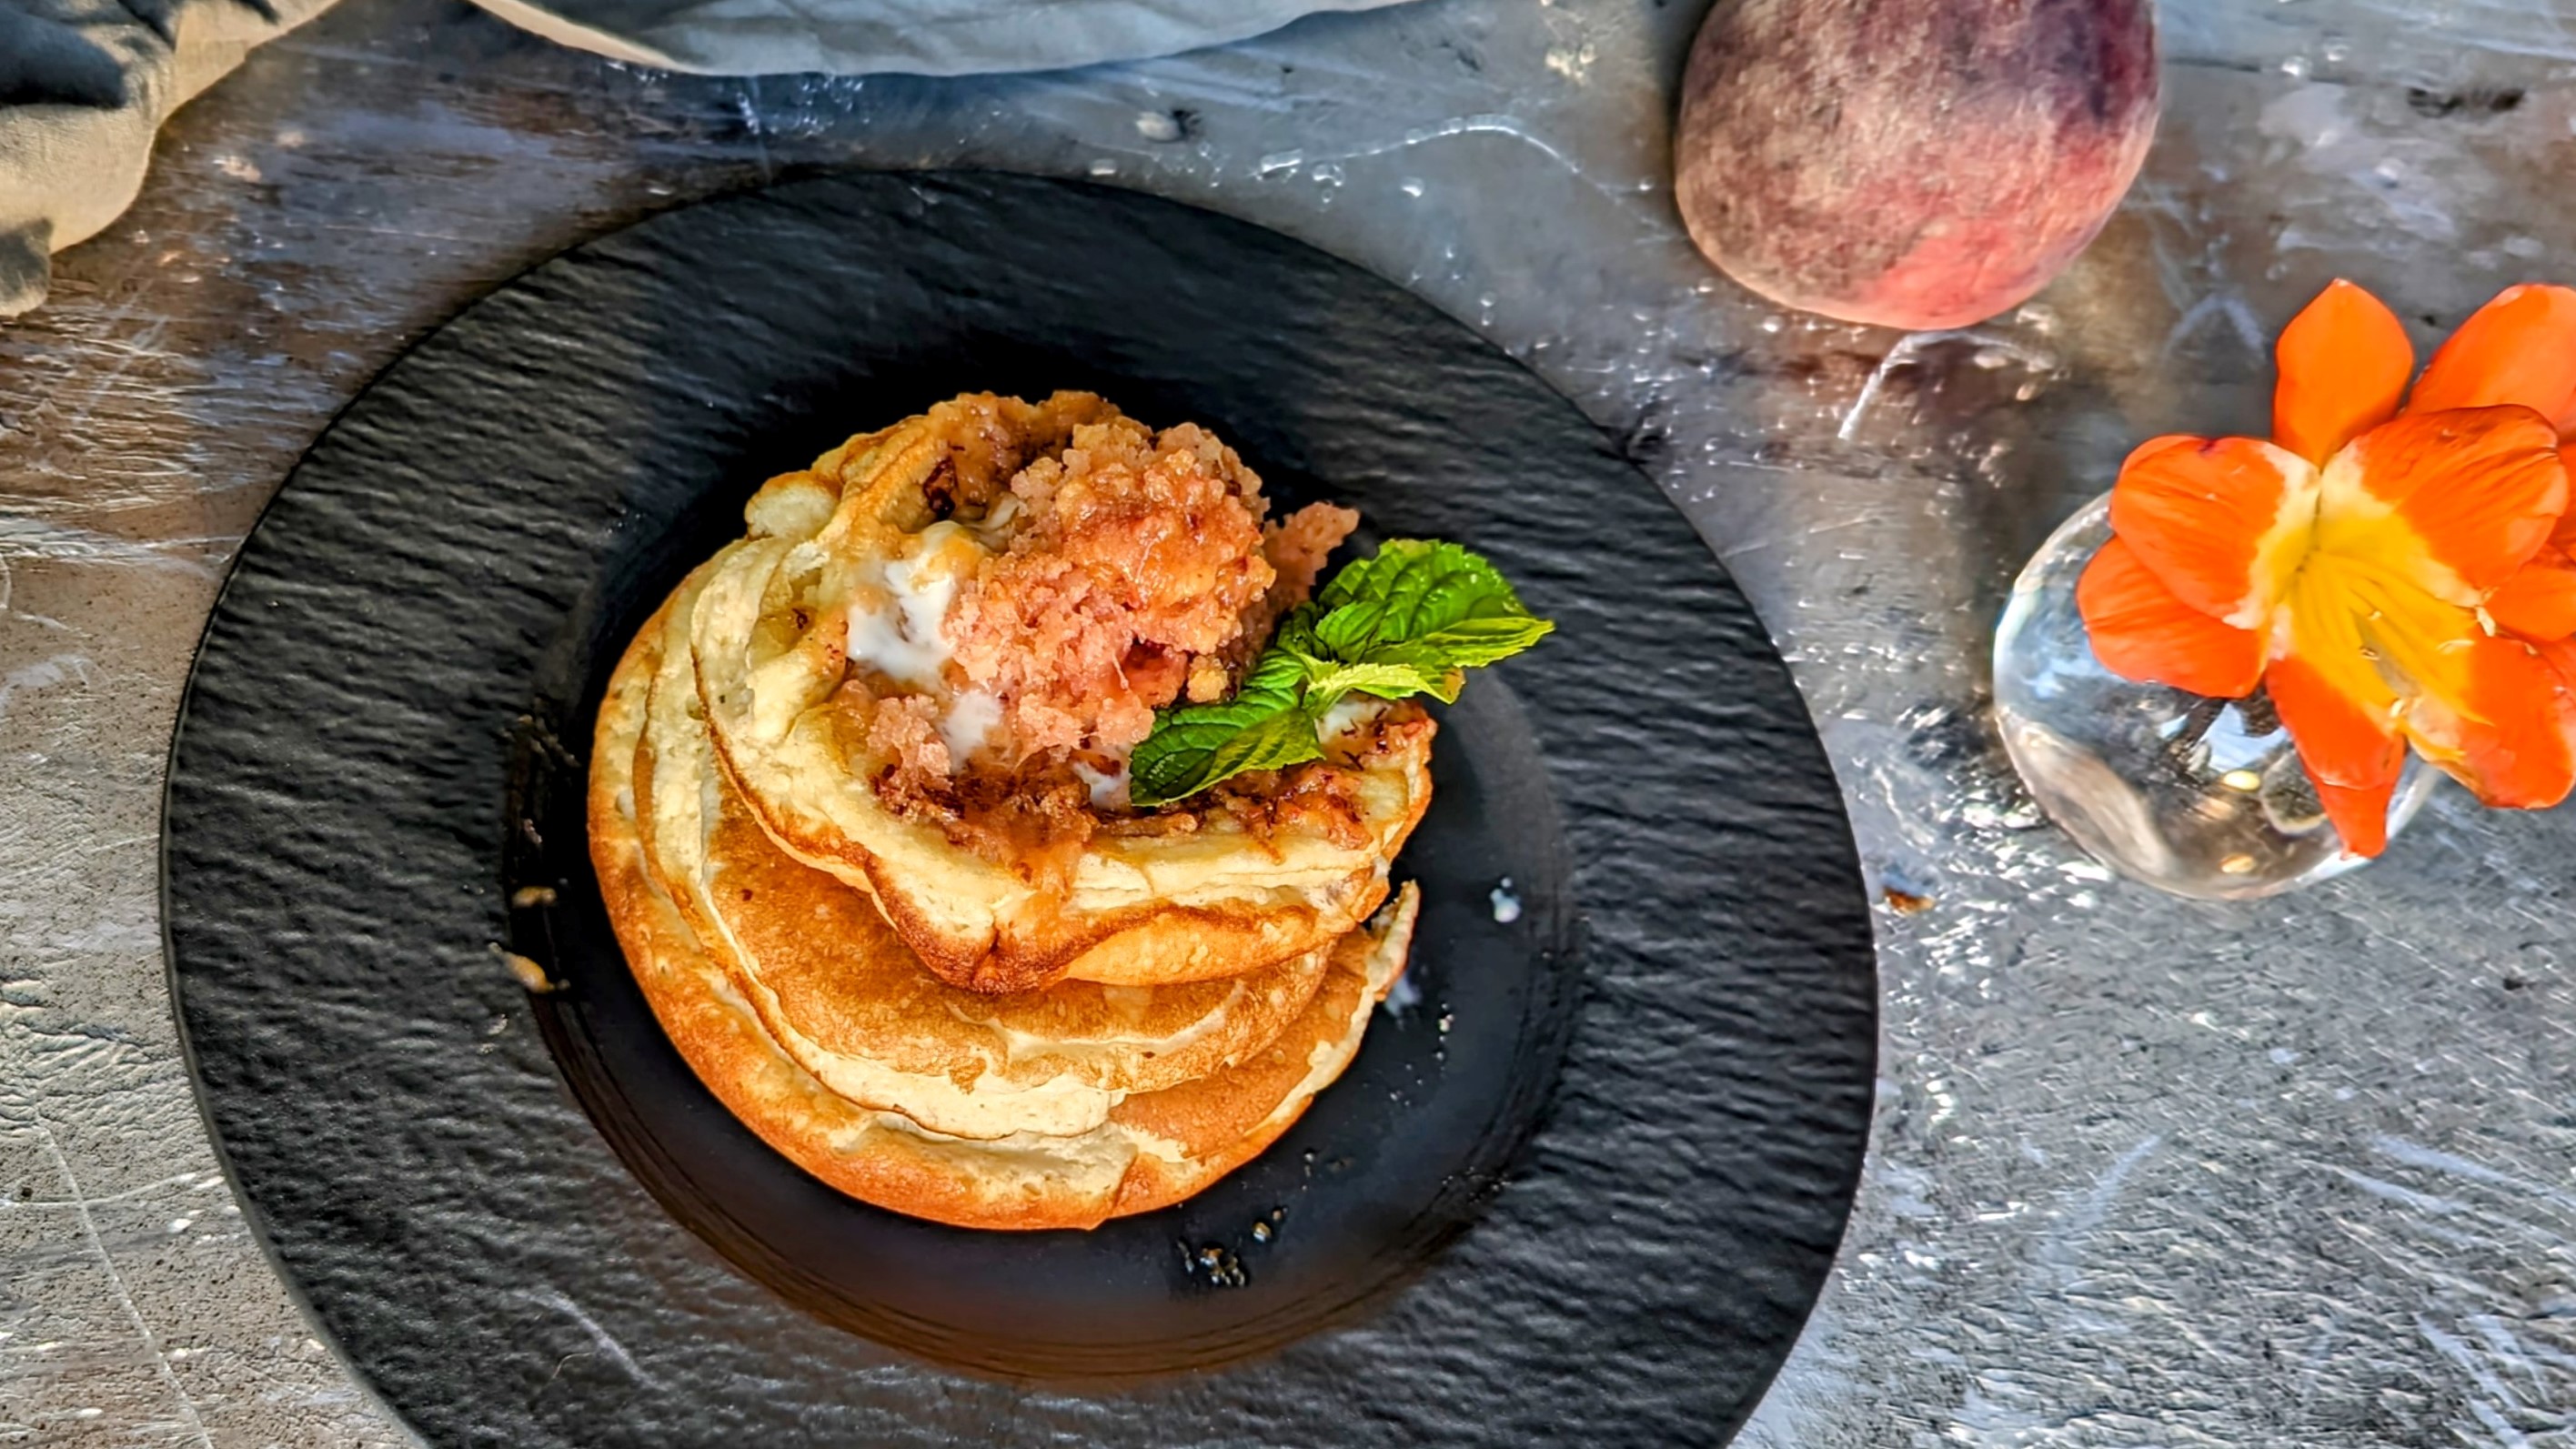 Ein schwarzer Teller mit Pancakes und geriebenem, gefrorenem Pfirsich auf grauem Steinuntergrund. Daneben eine orangene Blüte, ein Pfirsich sowie eine graue Tischdecke.